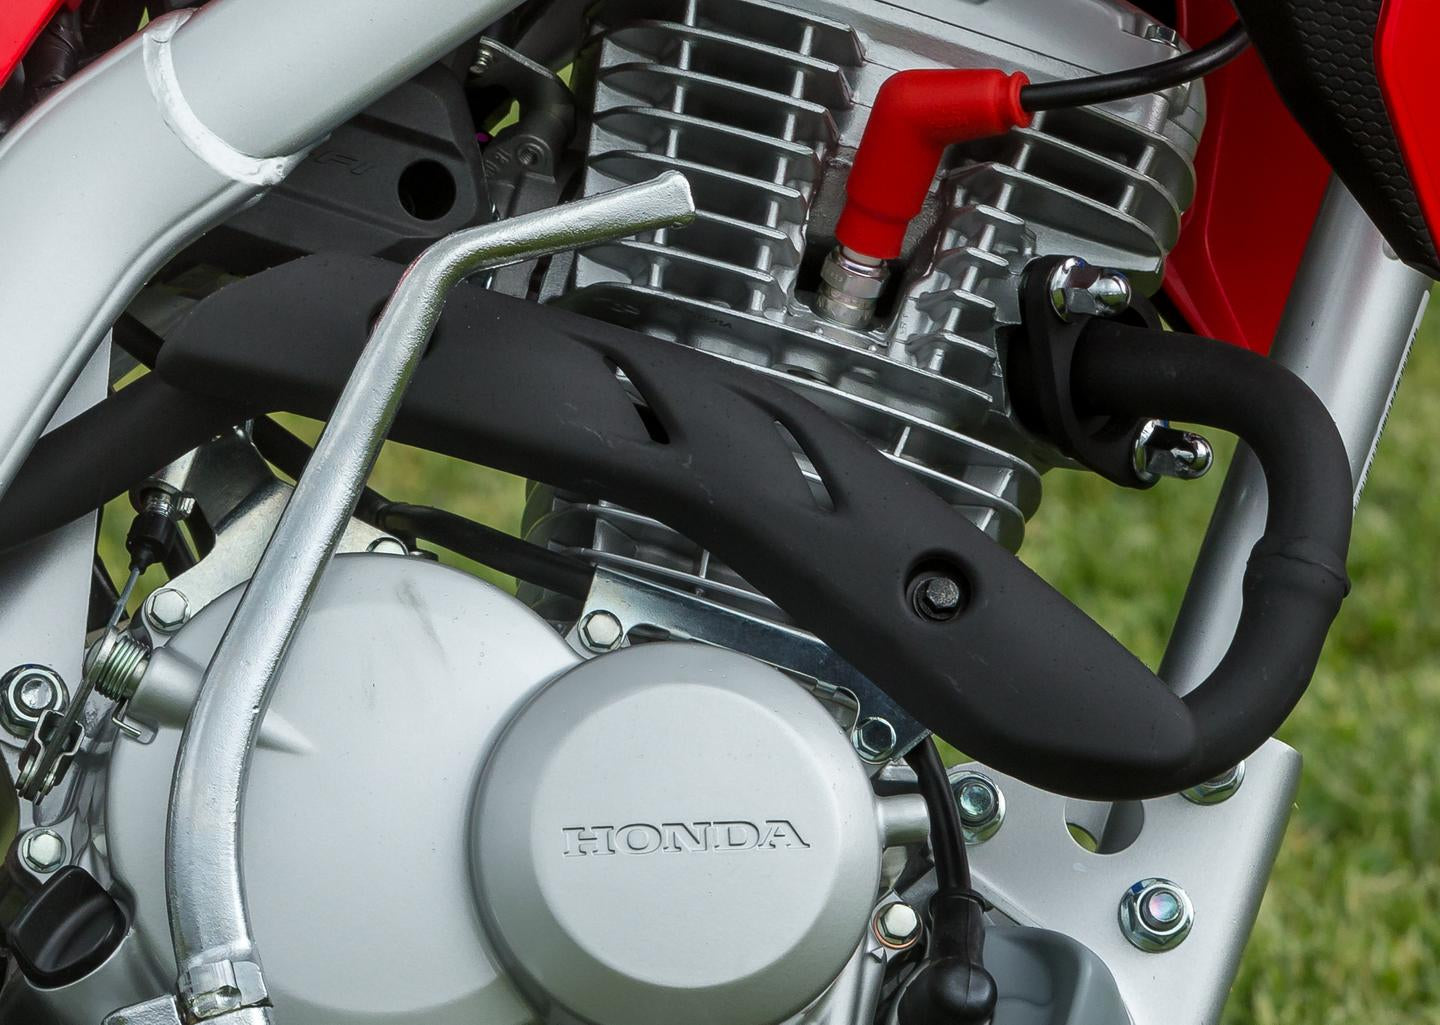 Honda CRF125F Small Wheel Motorcycle